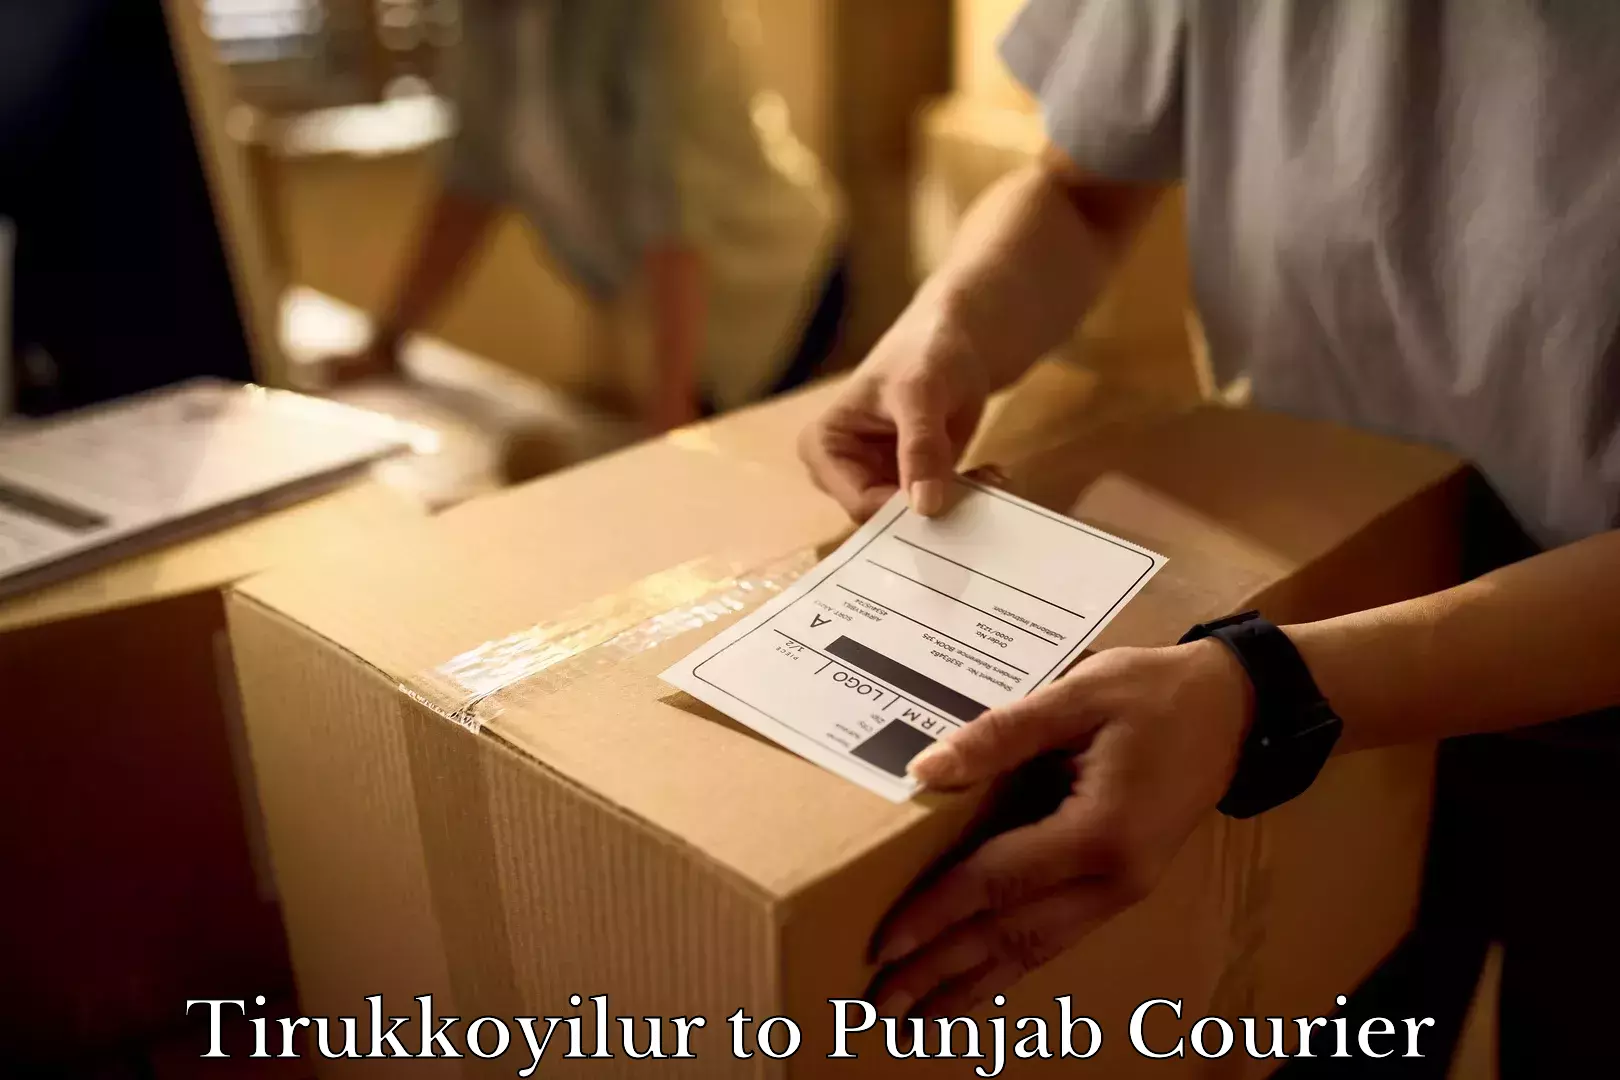 Furniture transport service Tirukkoyilur to Punjab